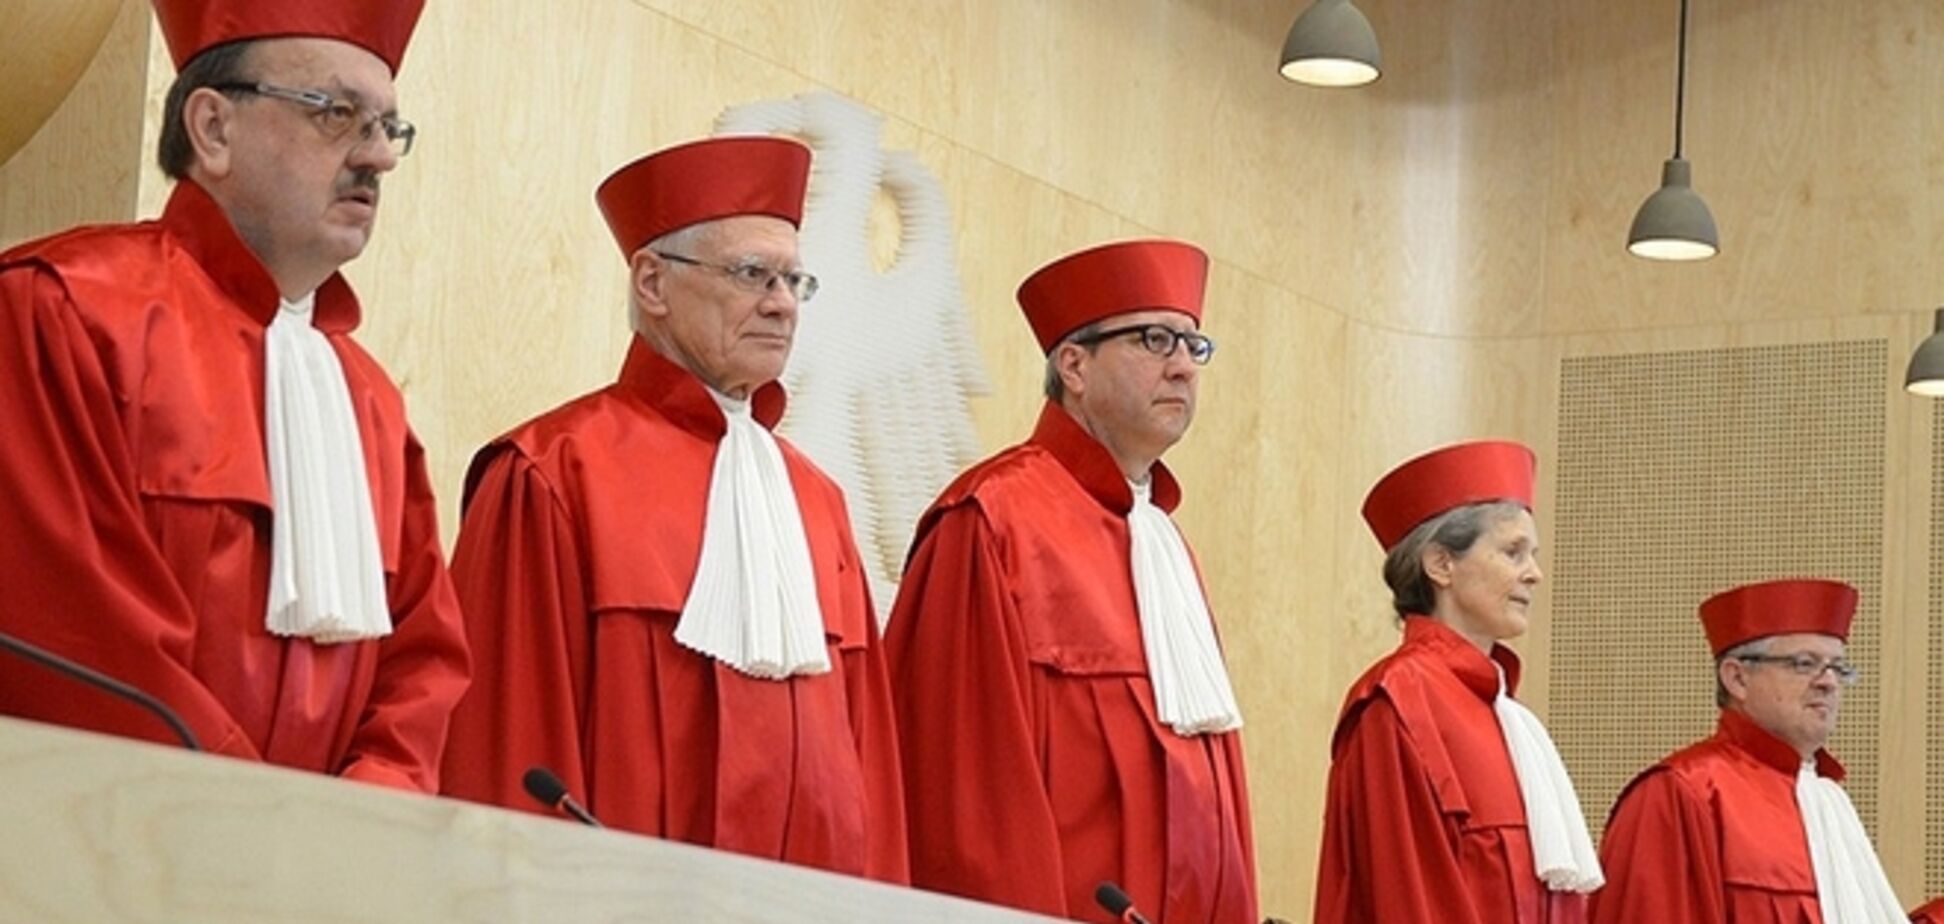 Сколько зарабатывают судьи в Германии?